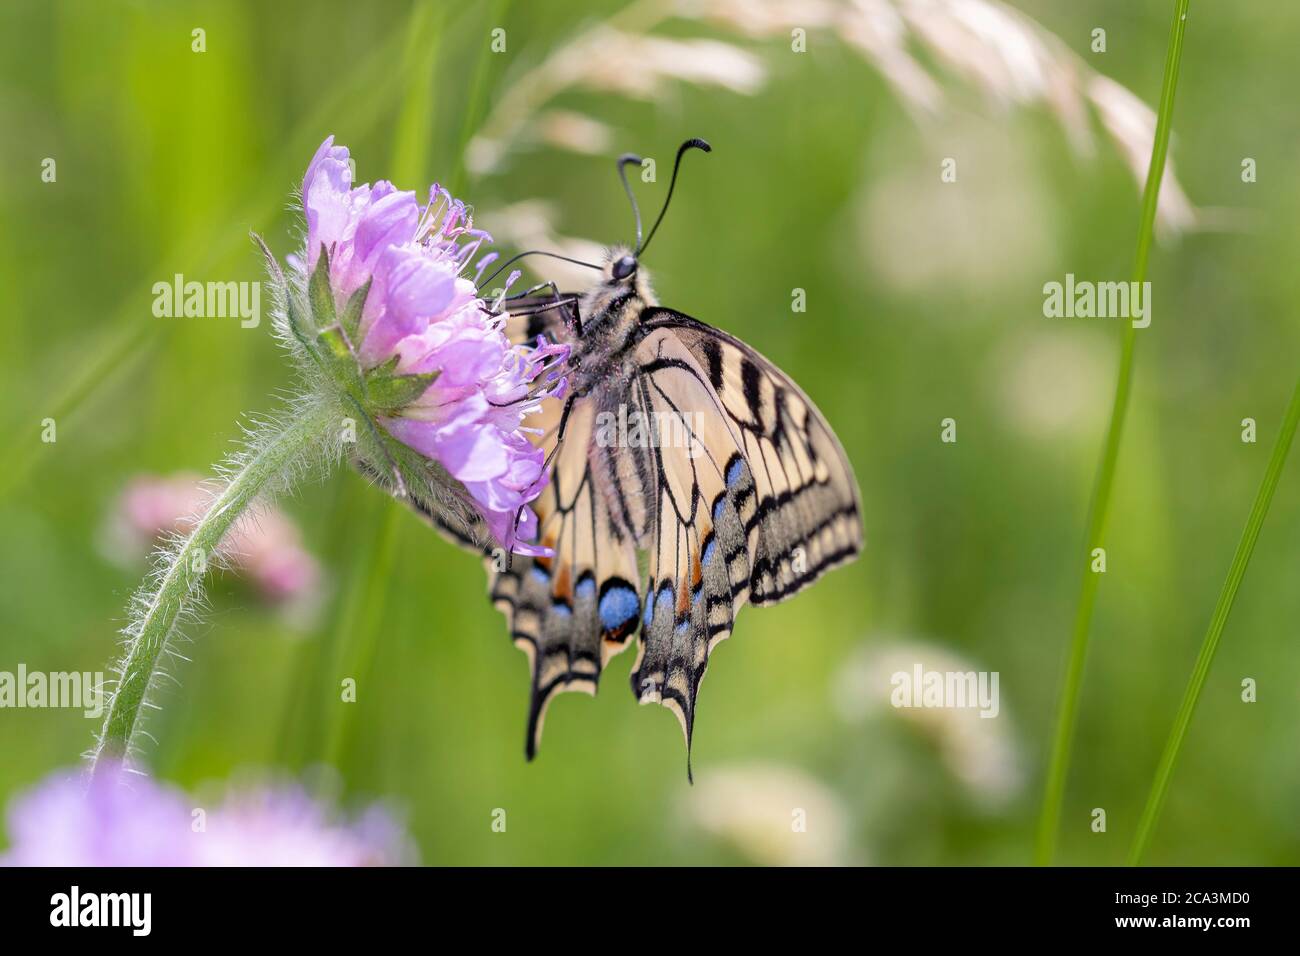 Coda di rondine gialla comune o coda di rondine del vecchio mondo - Papilio machaon - su un fiore Foto Stock